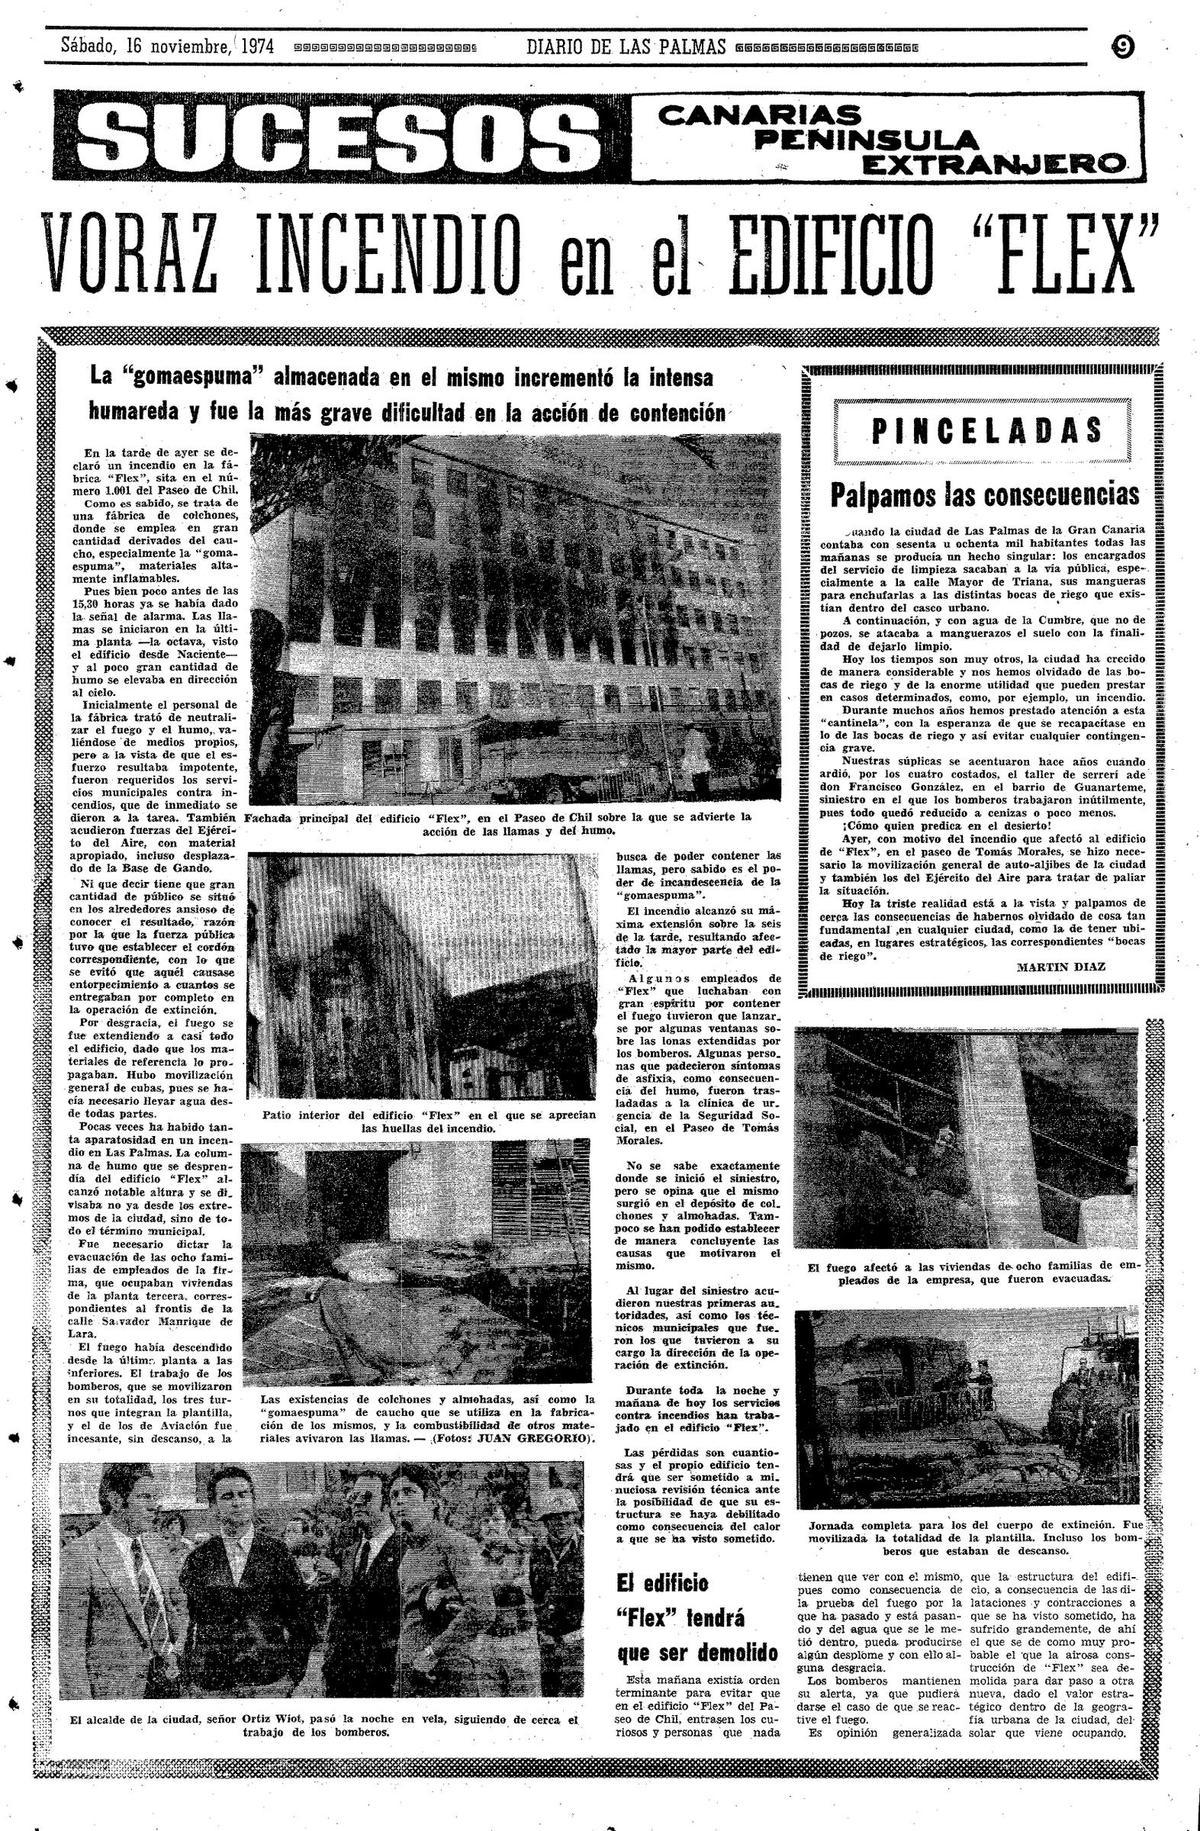 Página del Diario de Las Palmas del 16 de noviembre de 1974 dando cuenta del suceso en el edificio Flex.